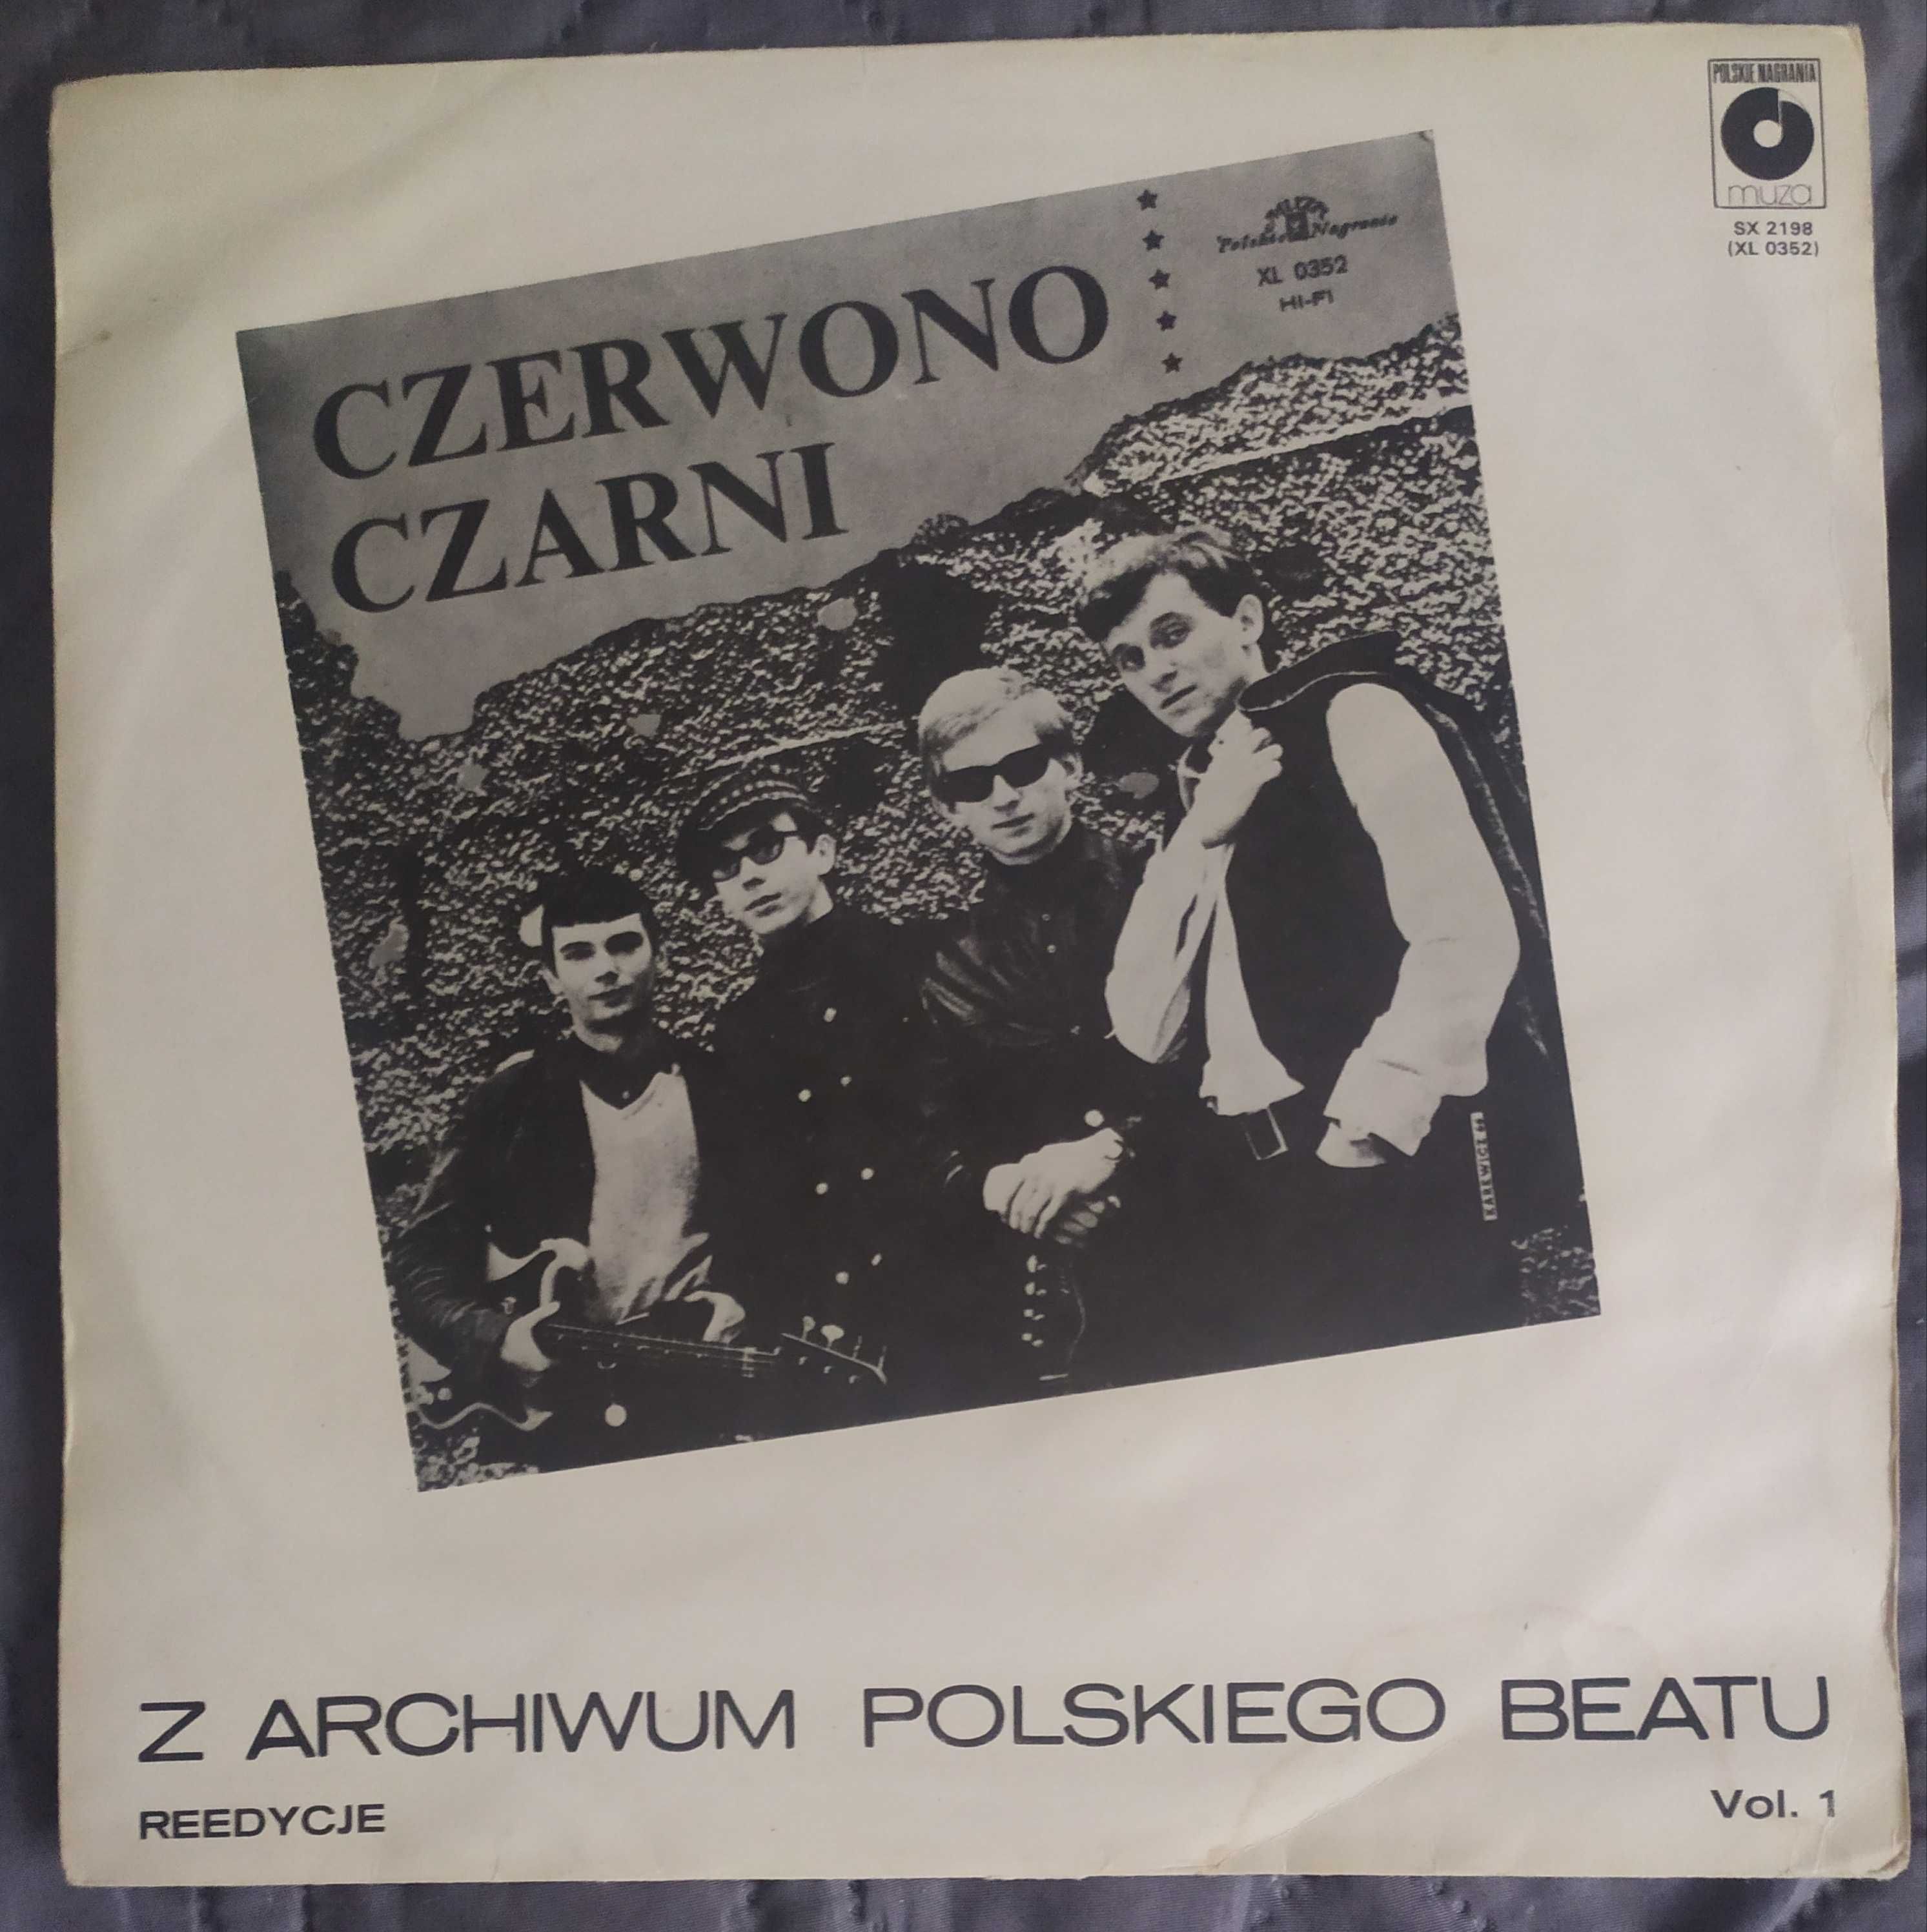 Czerwona-czarny. LP. EX.  Z archiwum Polskiego Beatu. Vol. 1